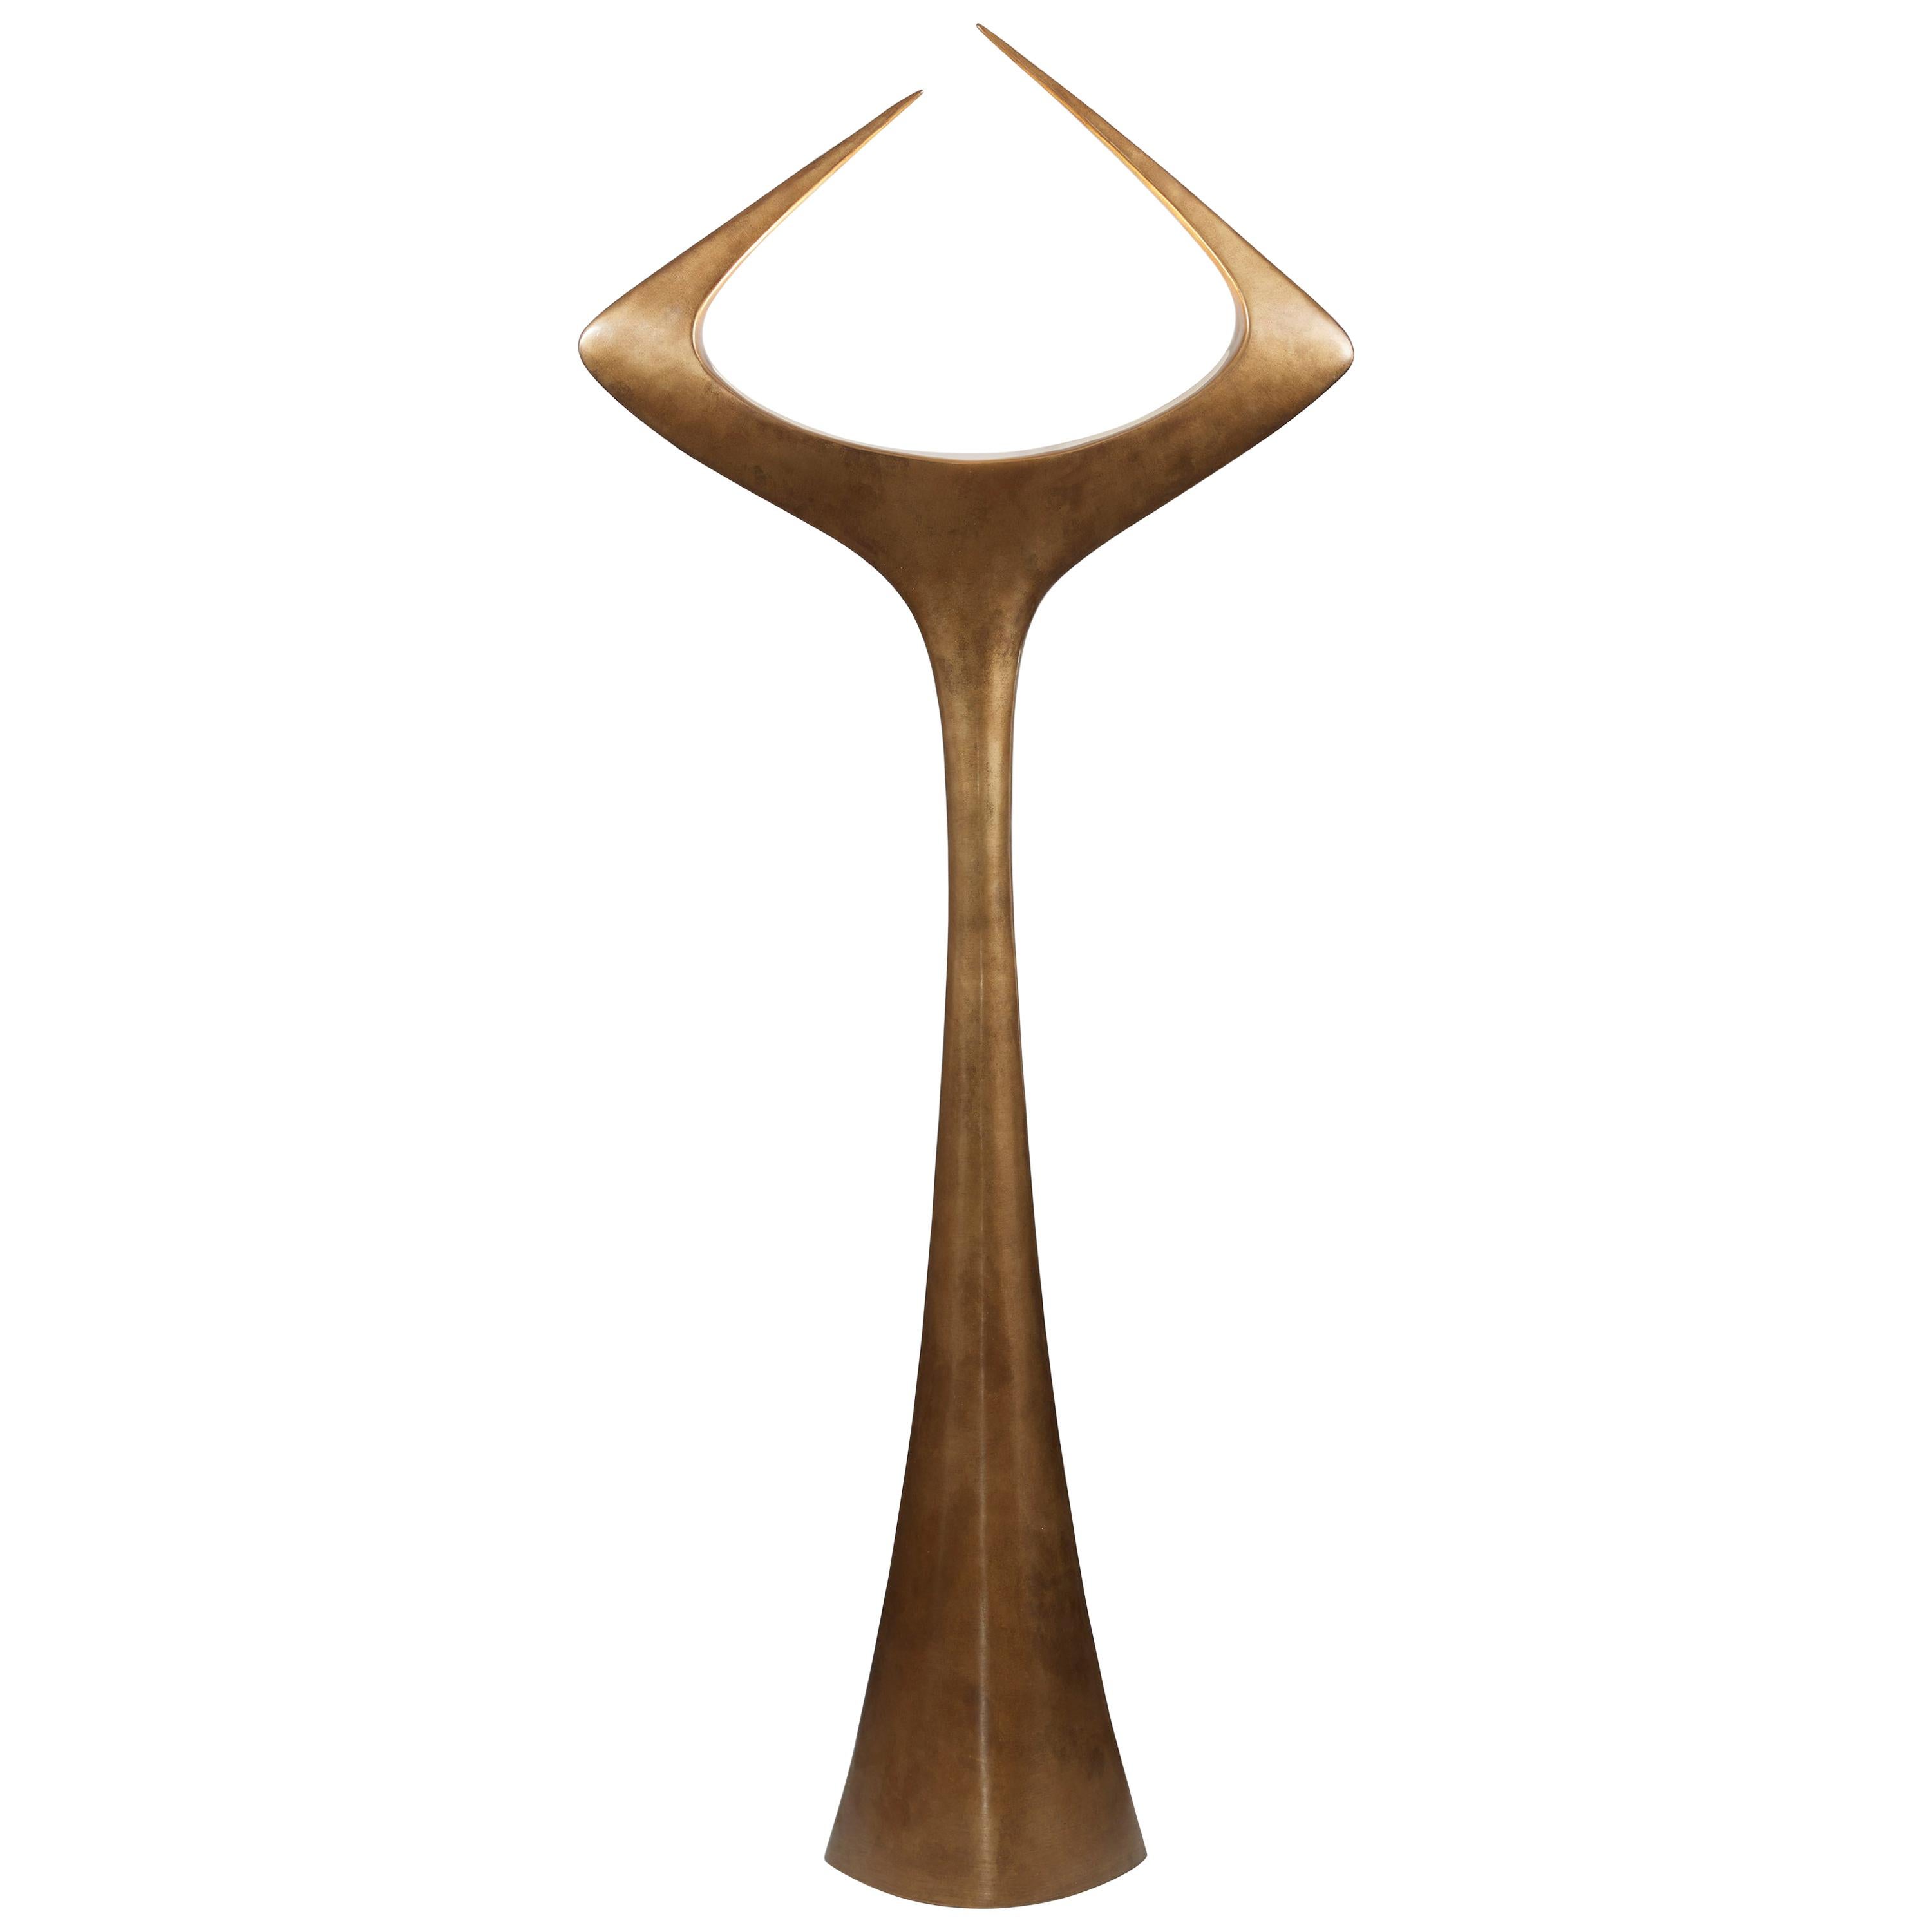  Bronze Floor Lamp 'Matta'  by french designer Alexandre Logé